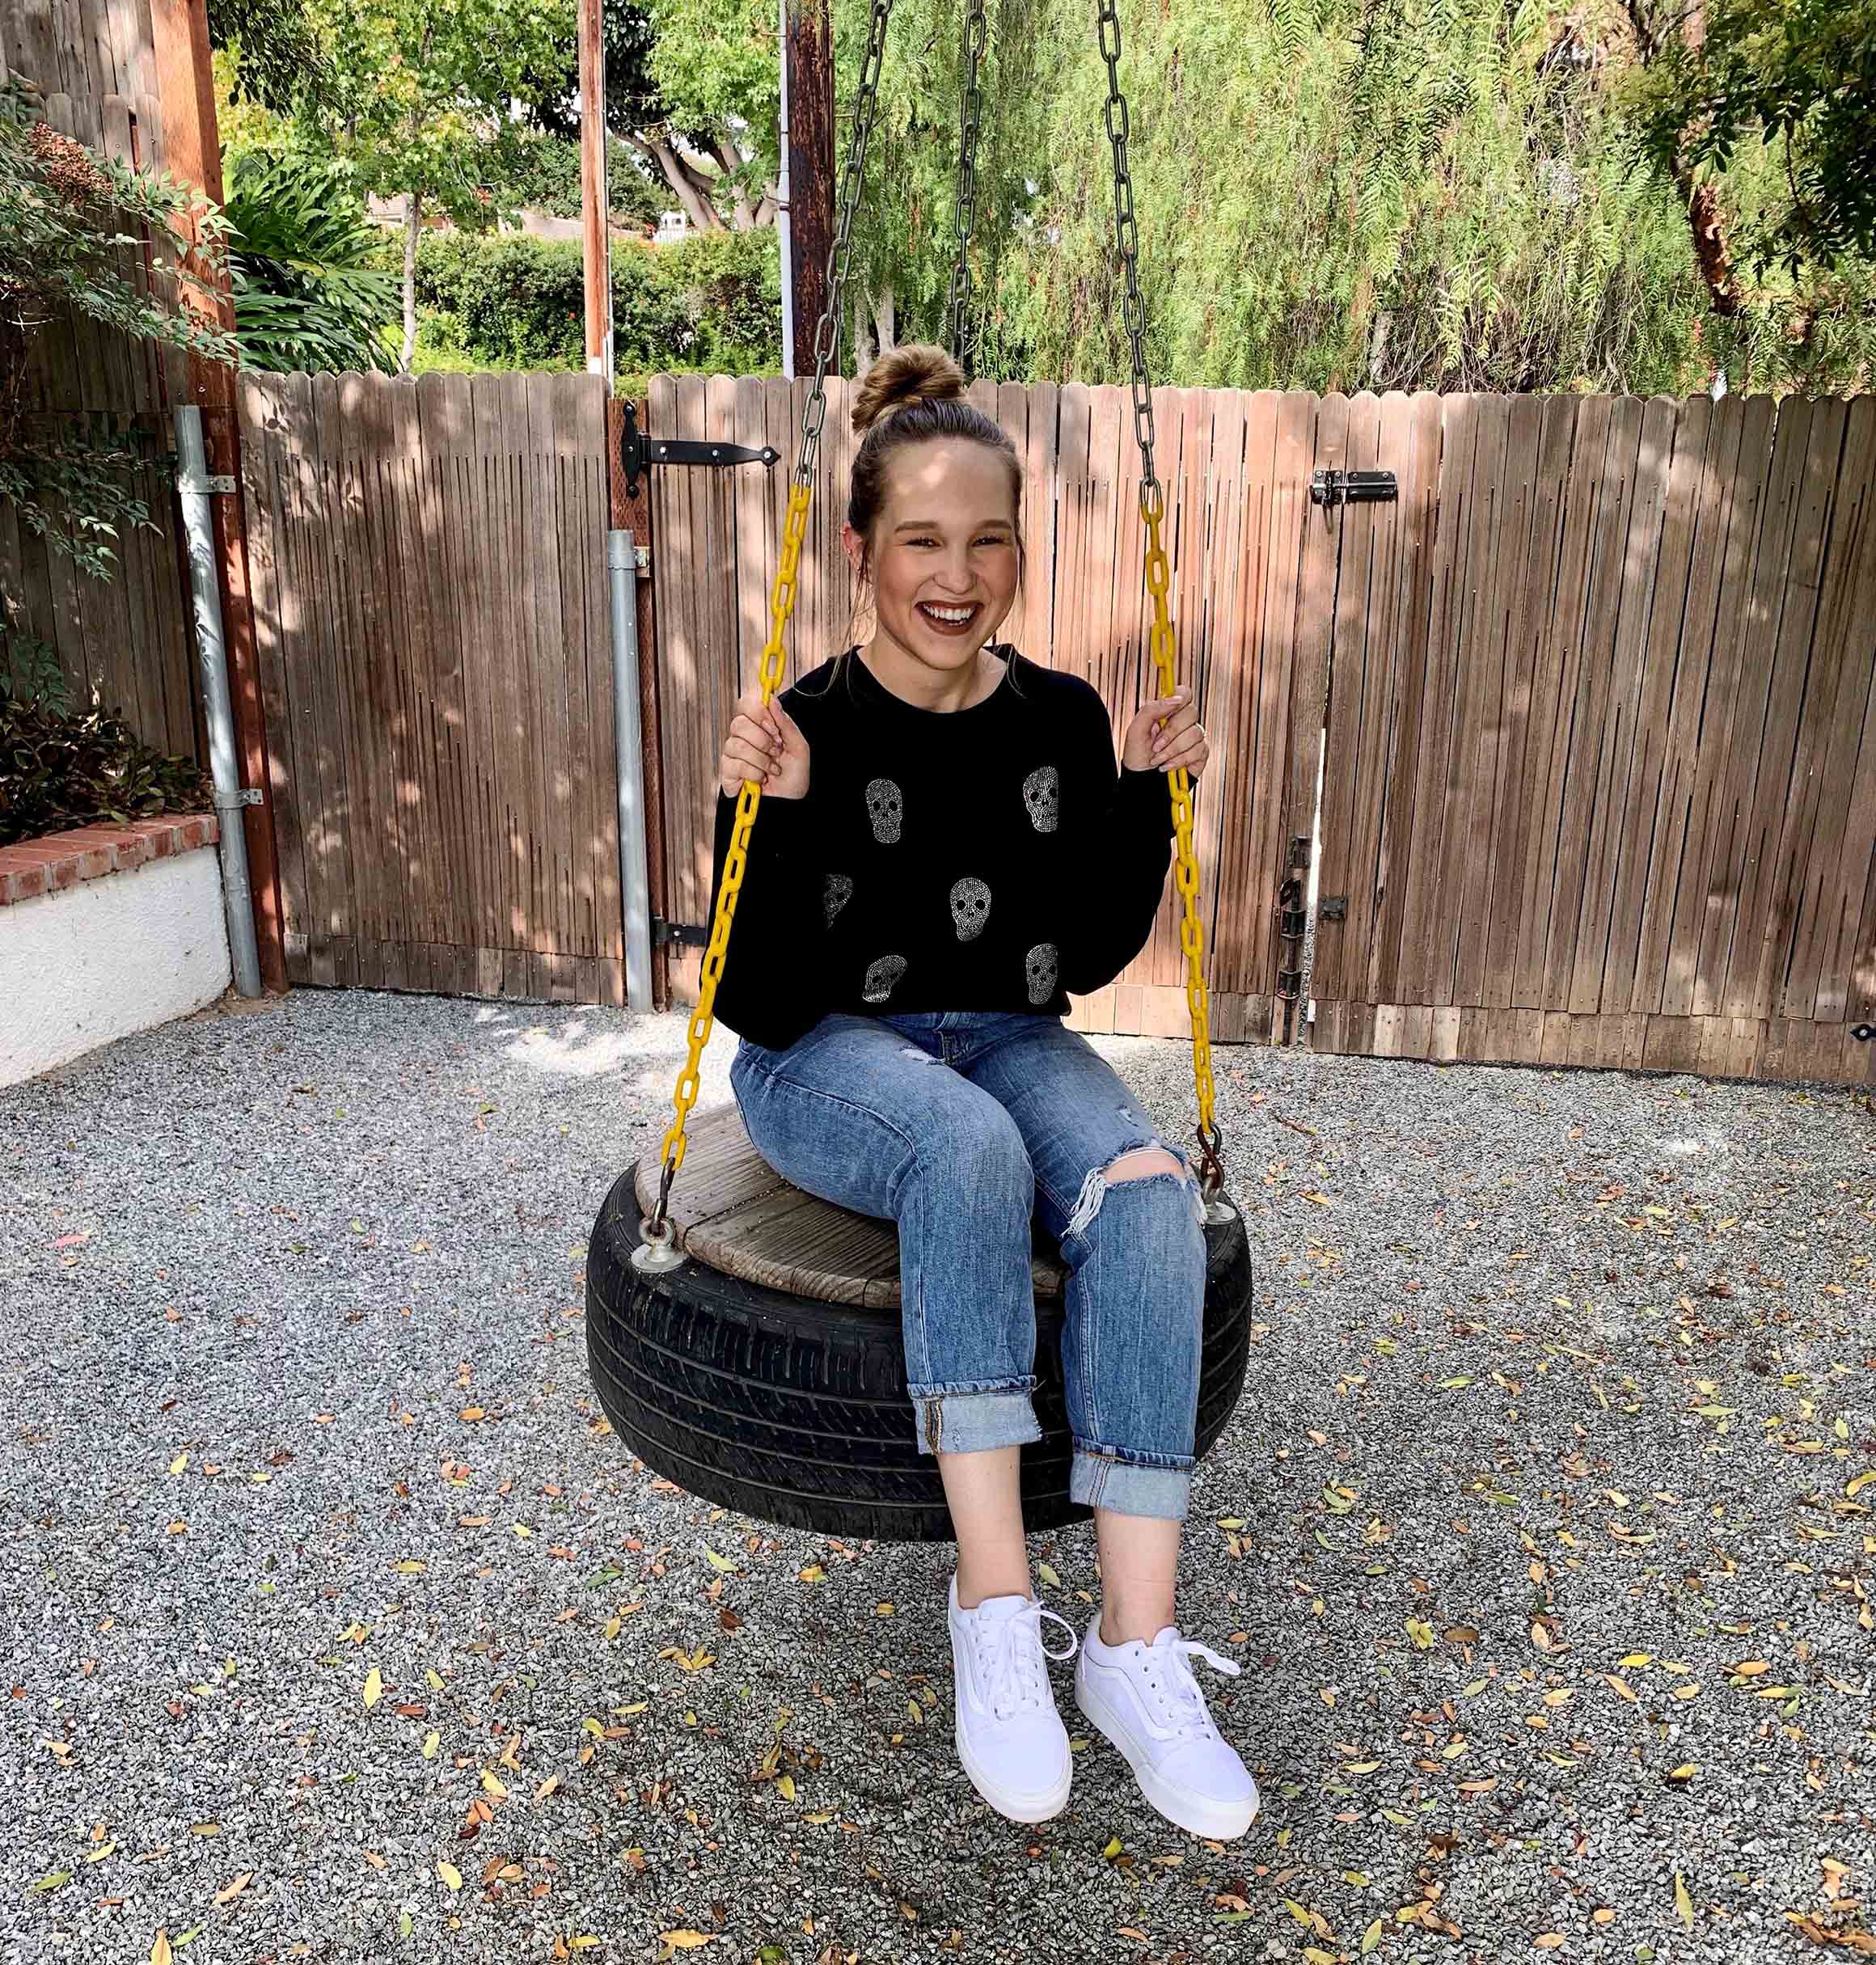 Sydney Rhead sits on a tire swing